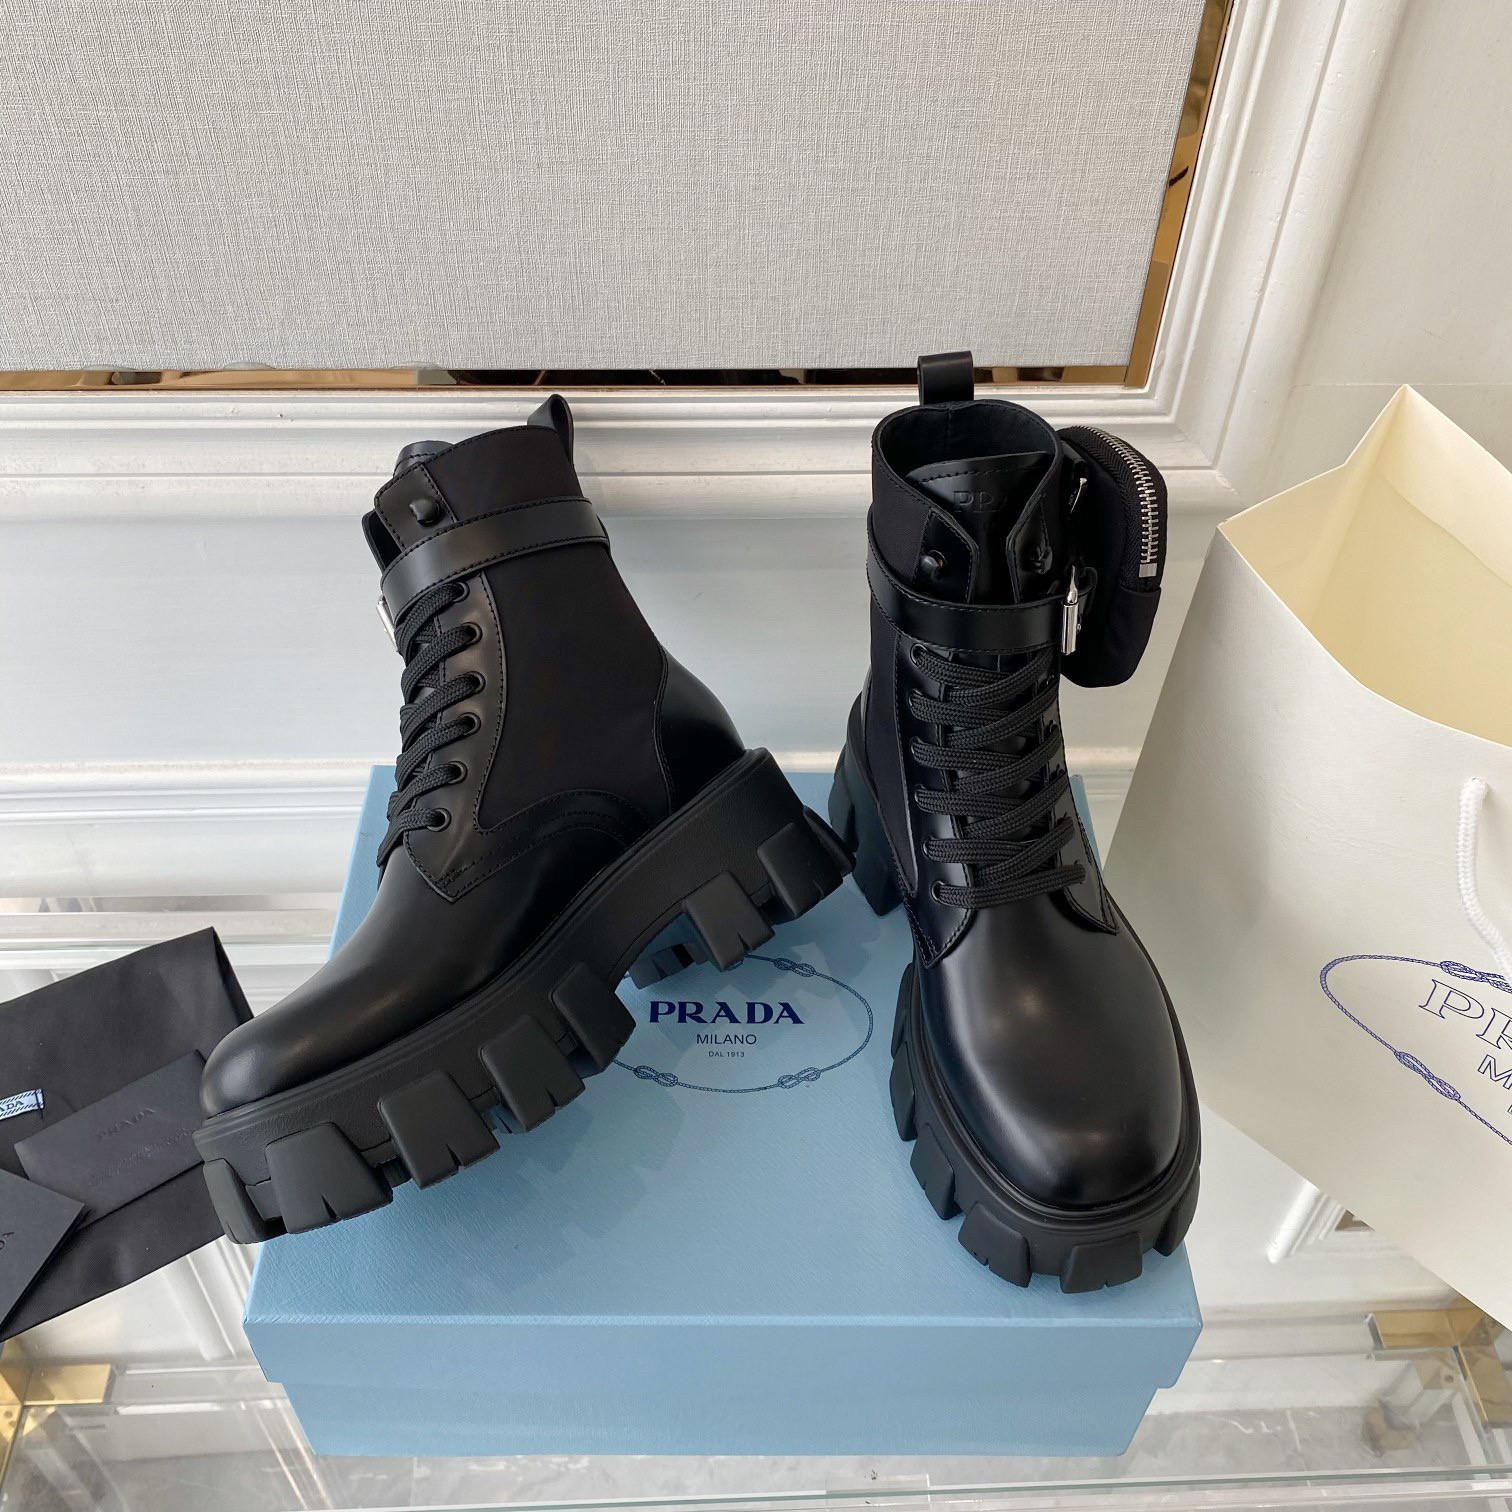 Replica Prada Monolith Boots in Black Leather and Nylon Fabric